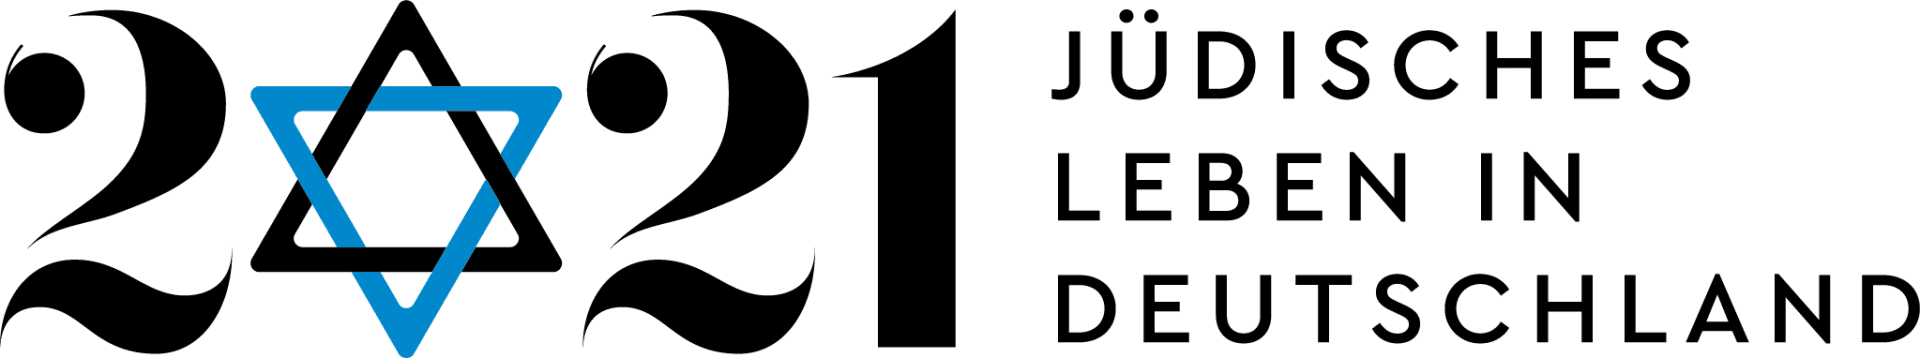 Schriftzug 2021 Jüdisches Leben in Deutschland